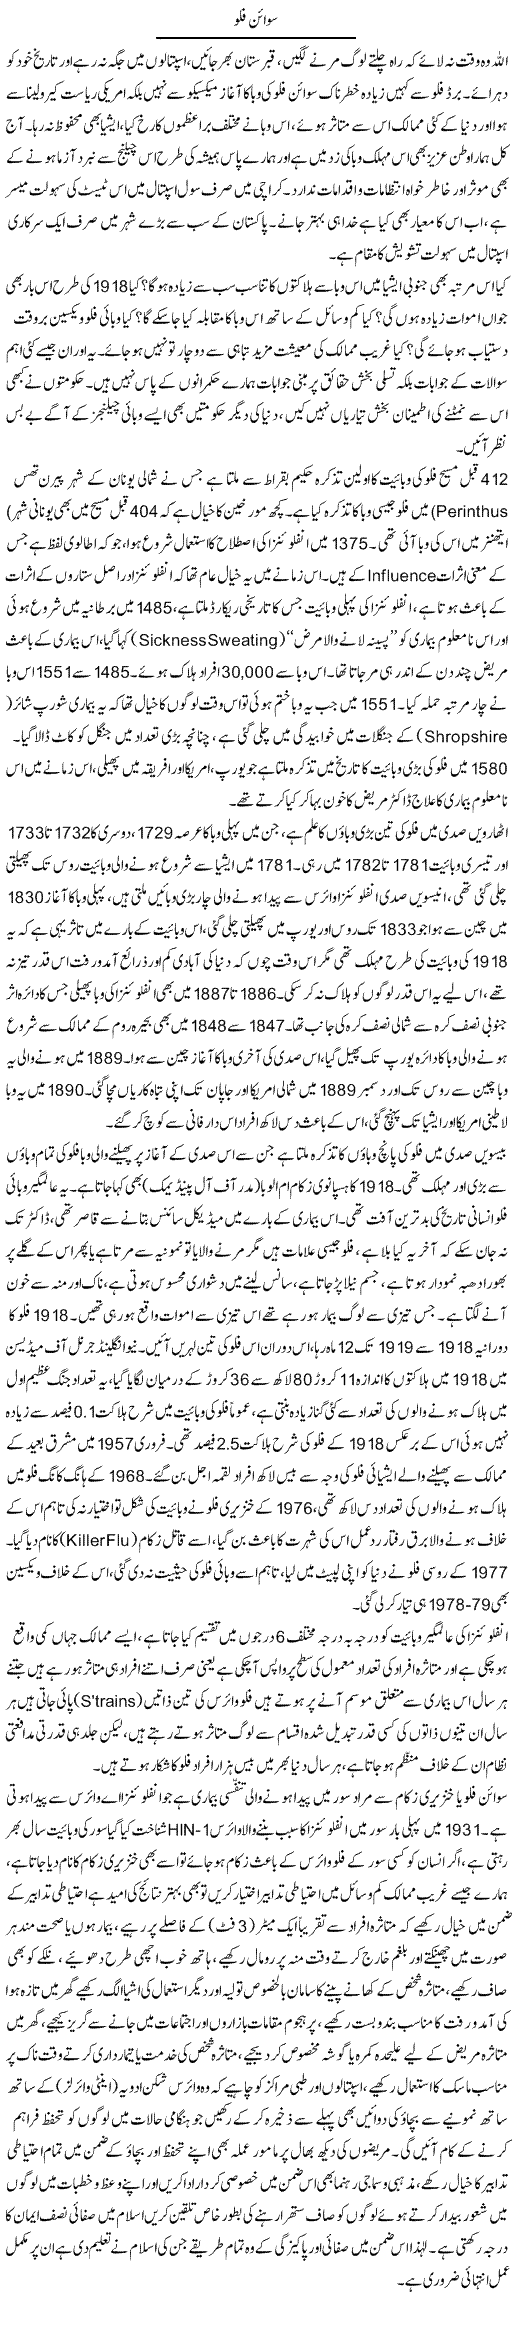 Swine Flu | Dr. Muhammad Tayyab Khan Singhanvi | Daily Urdu Columns